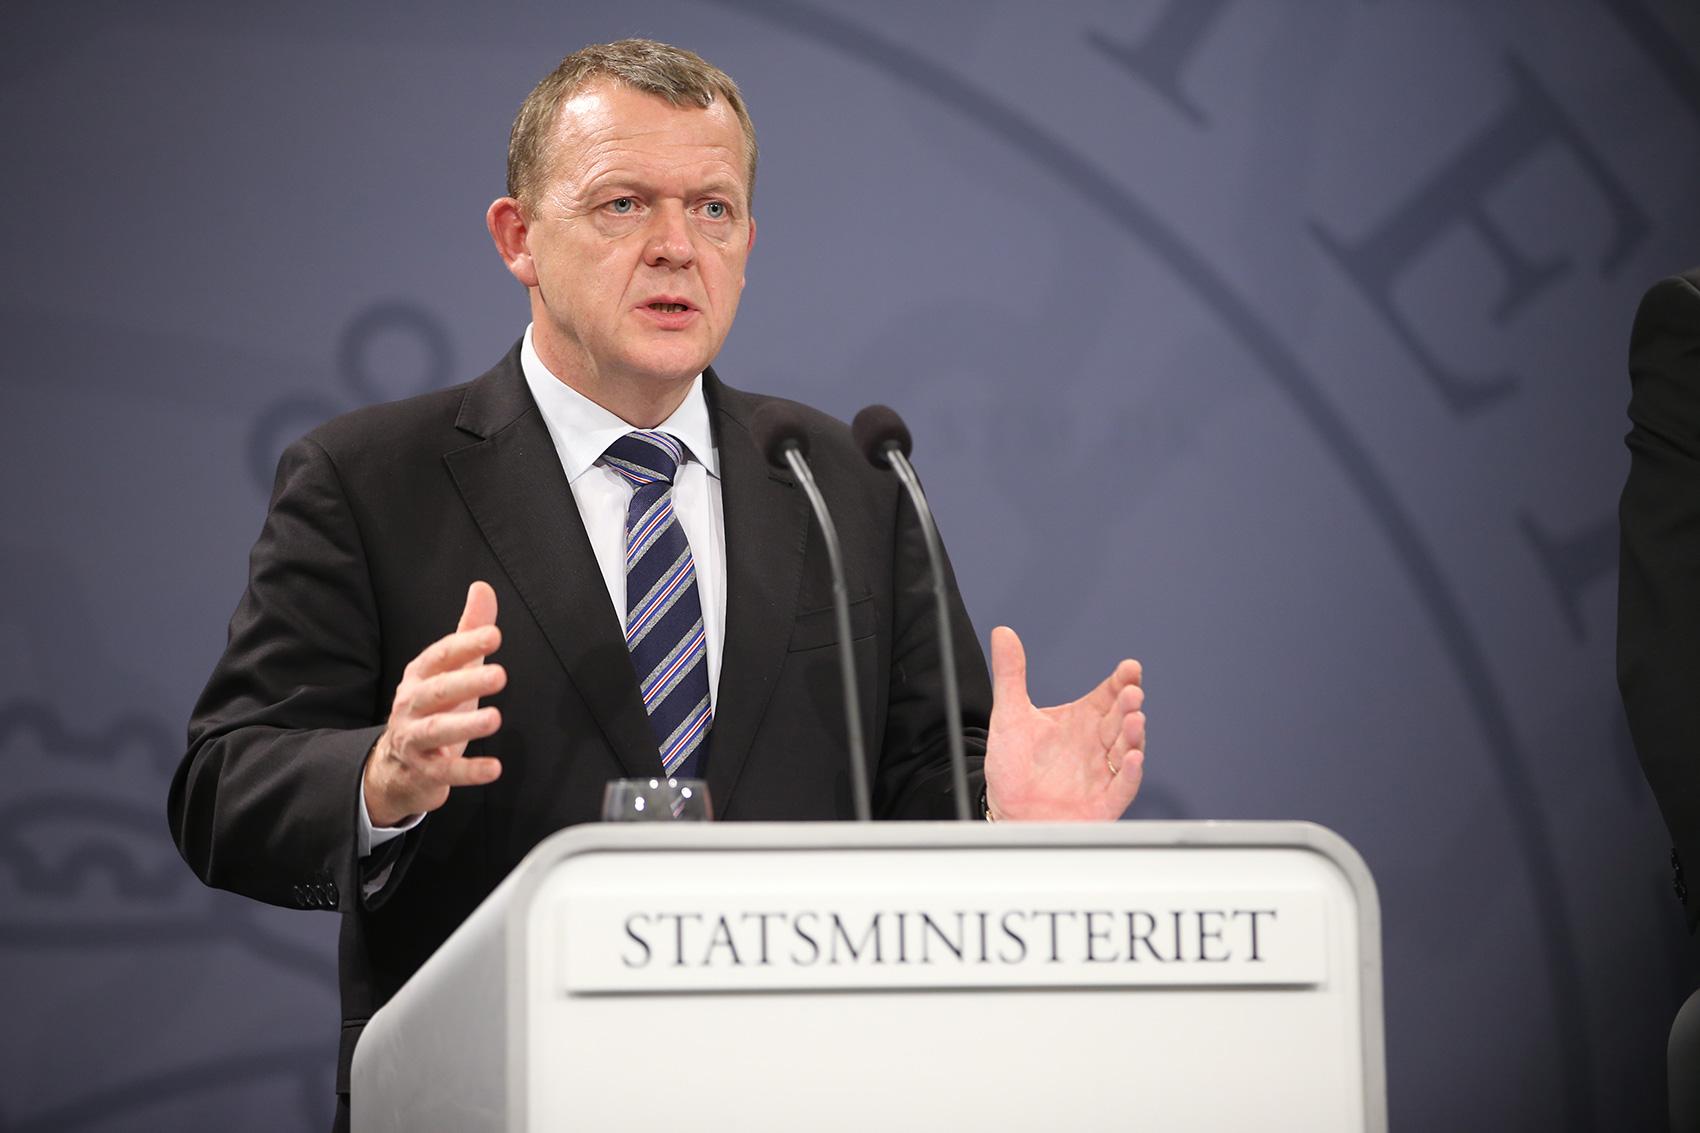 Danmarks statsminister Lars Løkke Rasmussen.